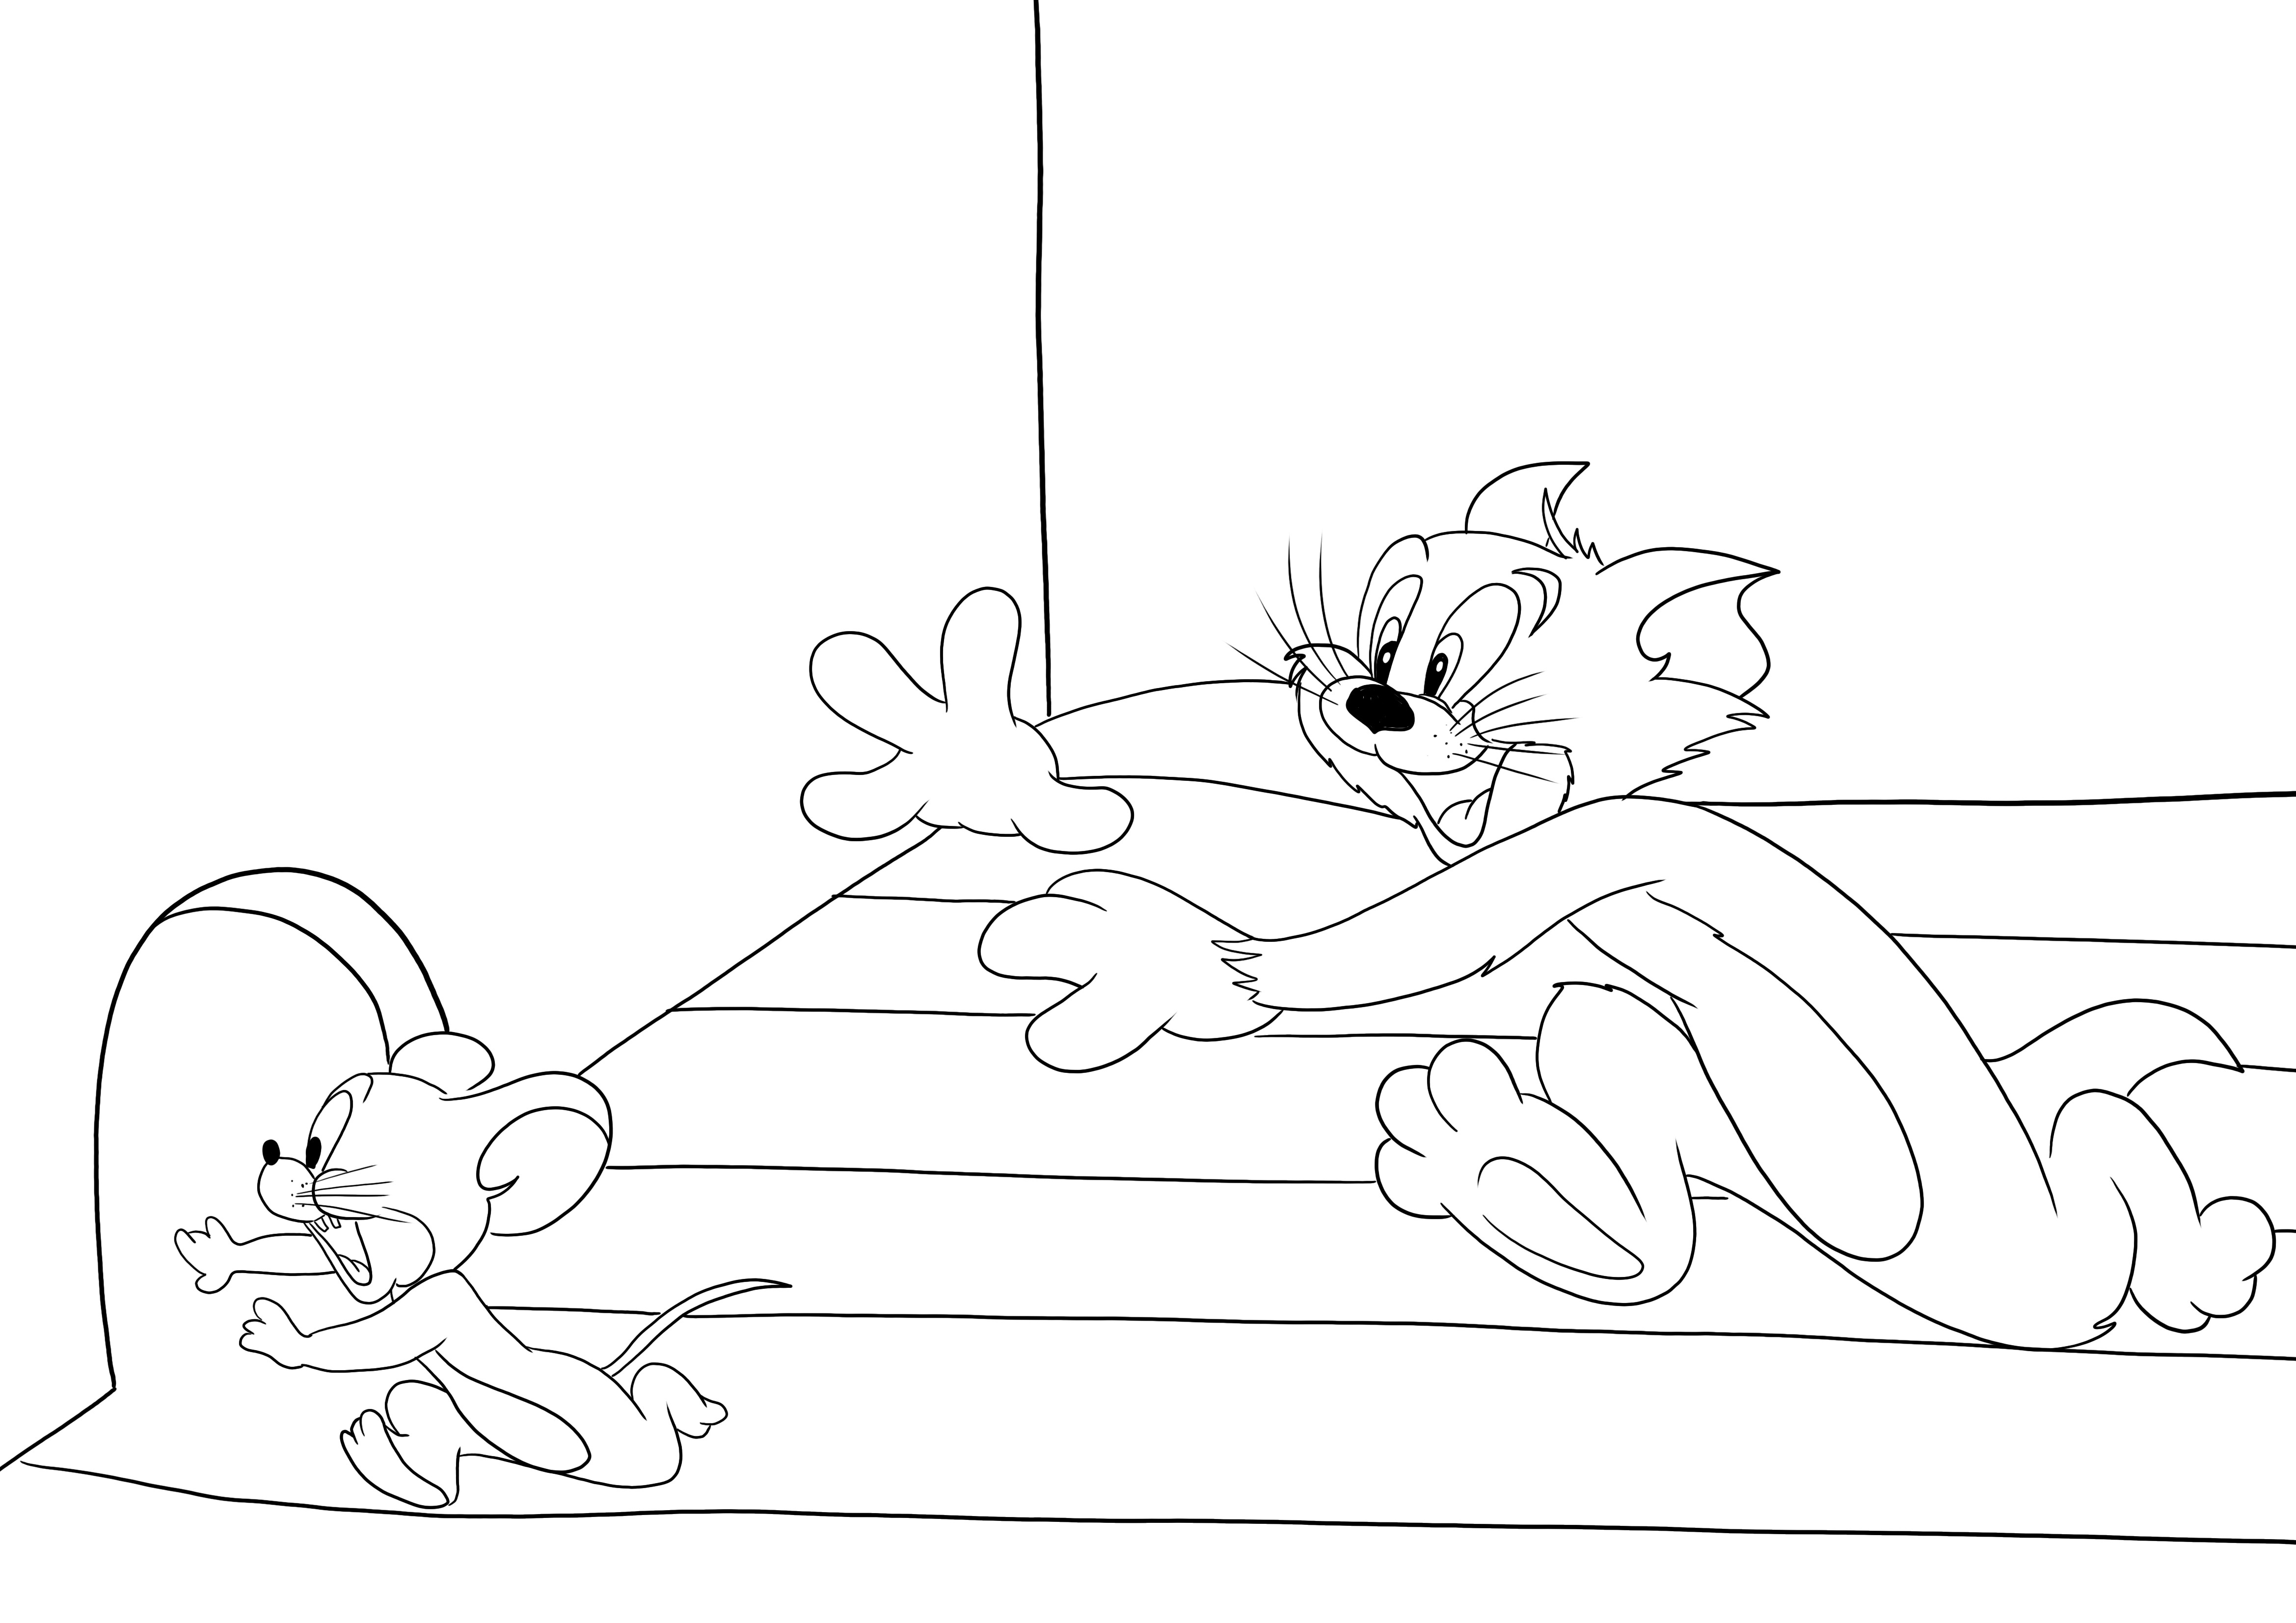 Ein kostenloses Bild zum Ausdrucken und Ausmalen von Jerry, der vor Tom davonläuft, für Kinder